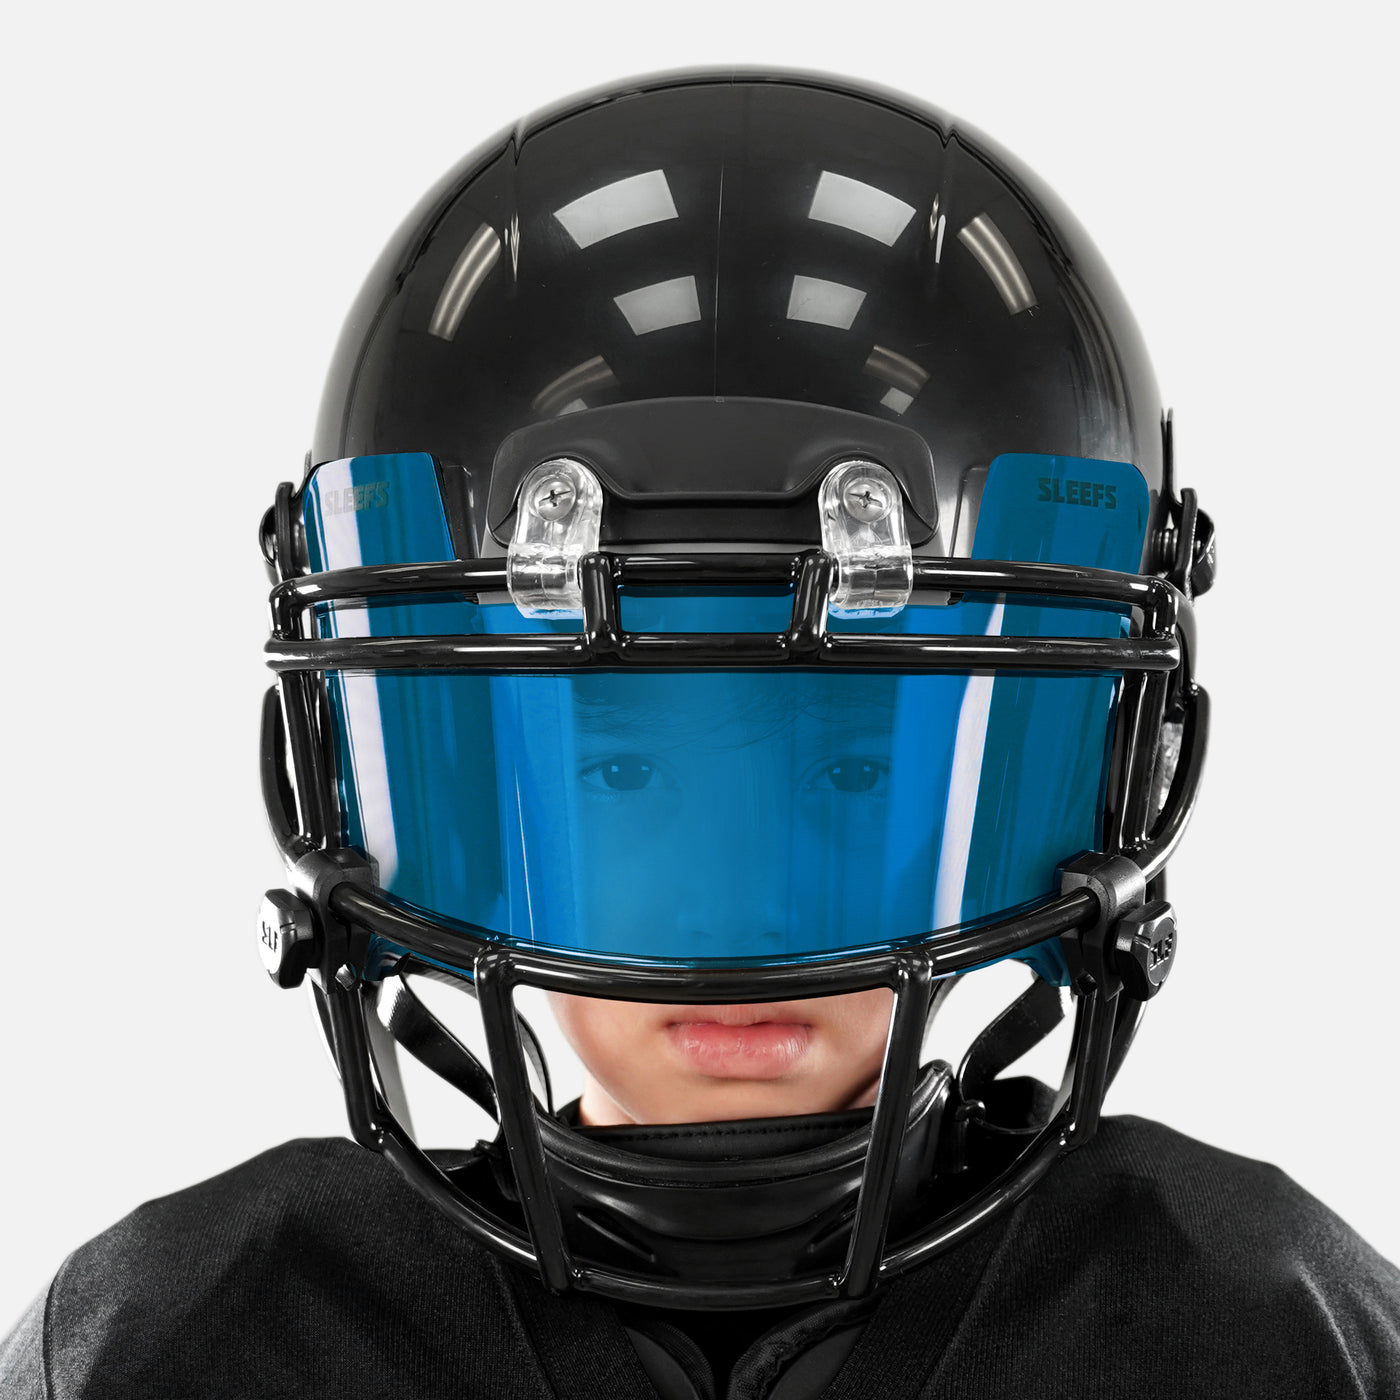 Hue Blue Helmet Eye-Shield Visor for Kids